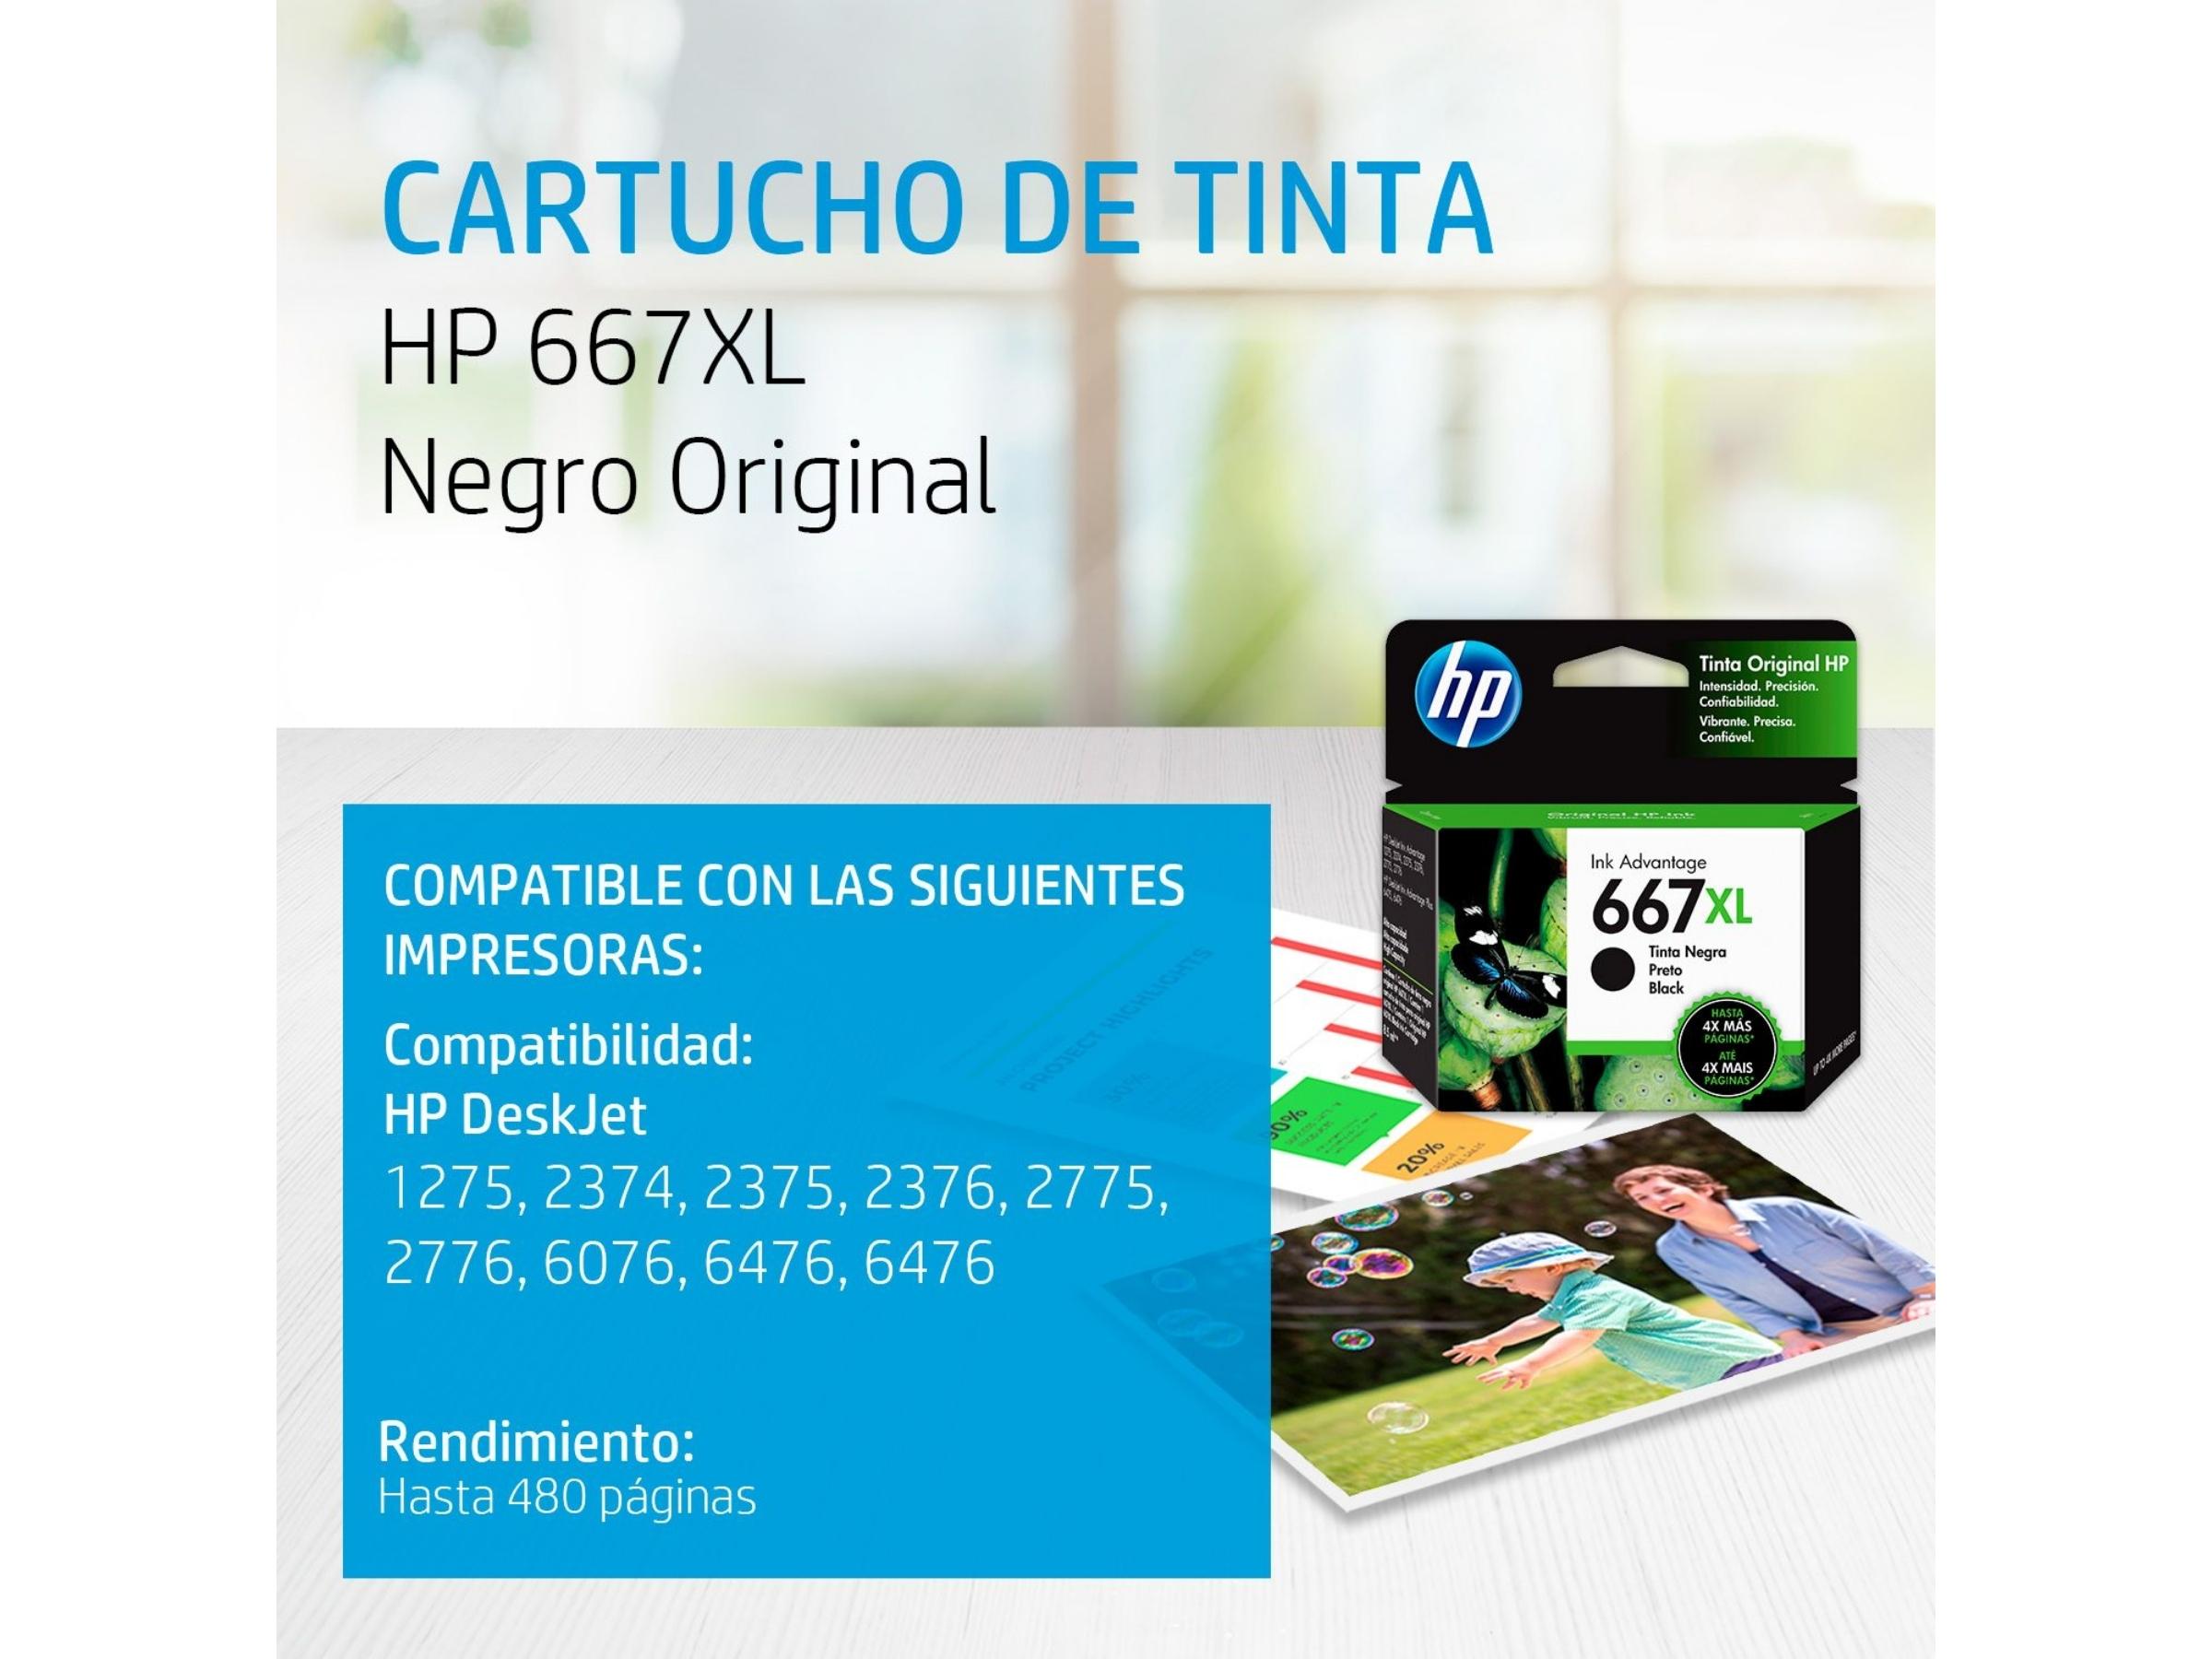 CARTUCHO DE TINTA HP 667XL BLACK (3YM81AL) 1275/2374/2375/2376/2775/2776